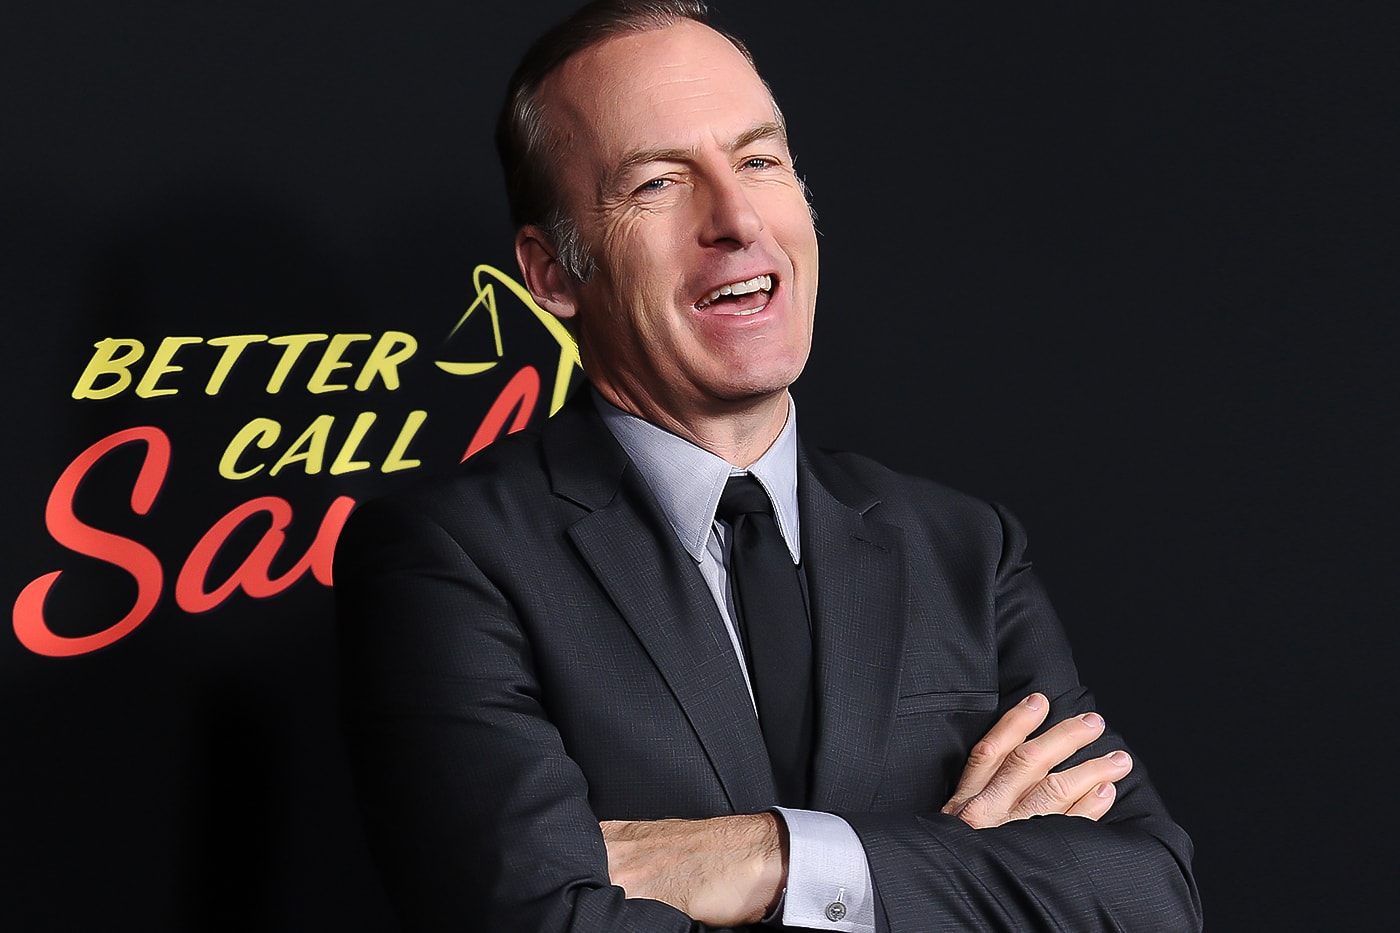 主演 Bob Odenkirk 發佈感性影片正式向《絕命律師 Better Call Saul》道別